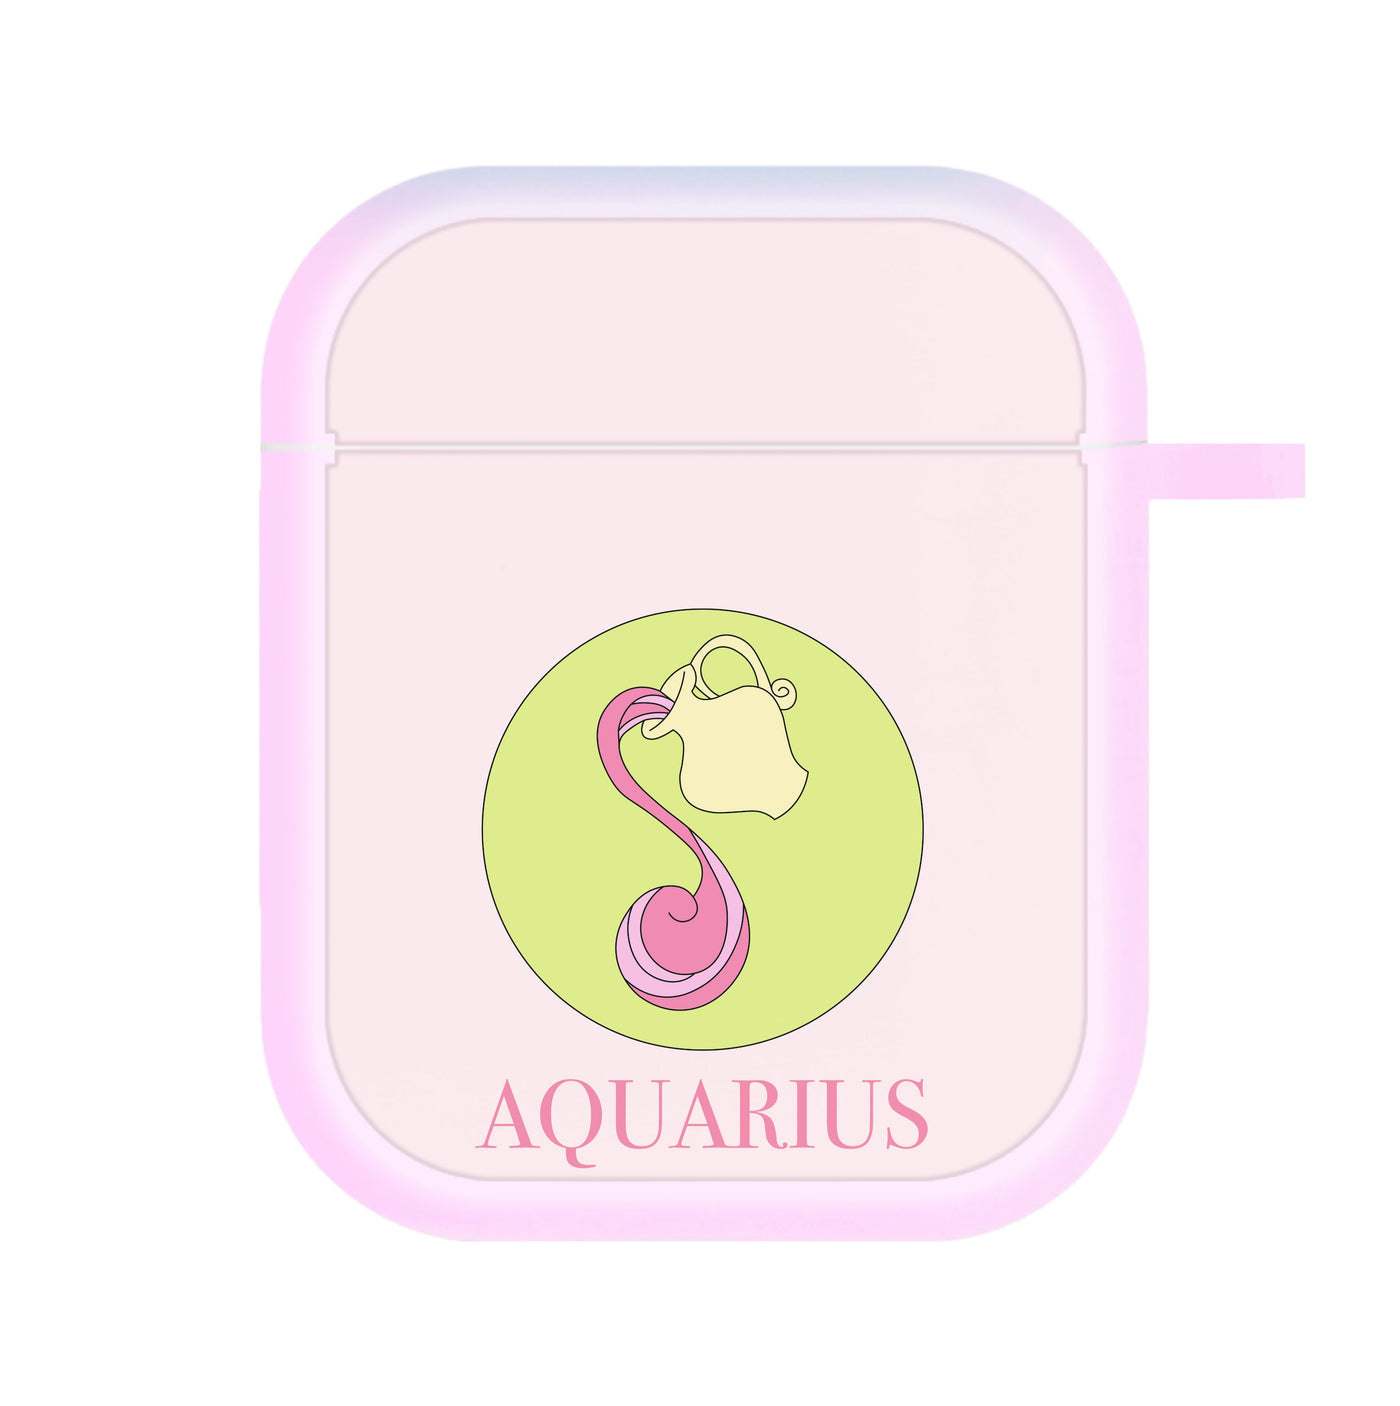 Aquarius - Tarot Cards AirPods Case